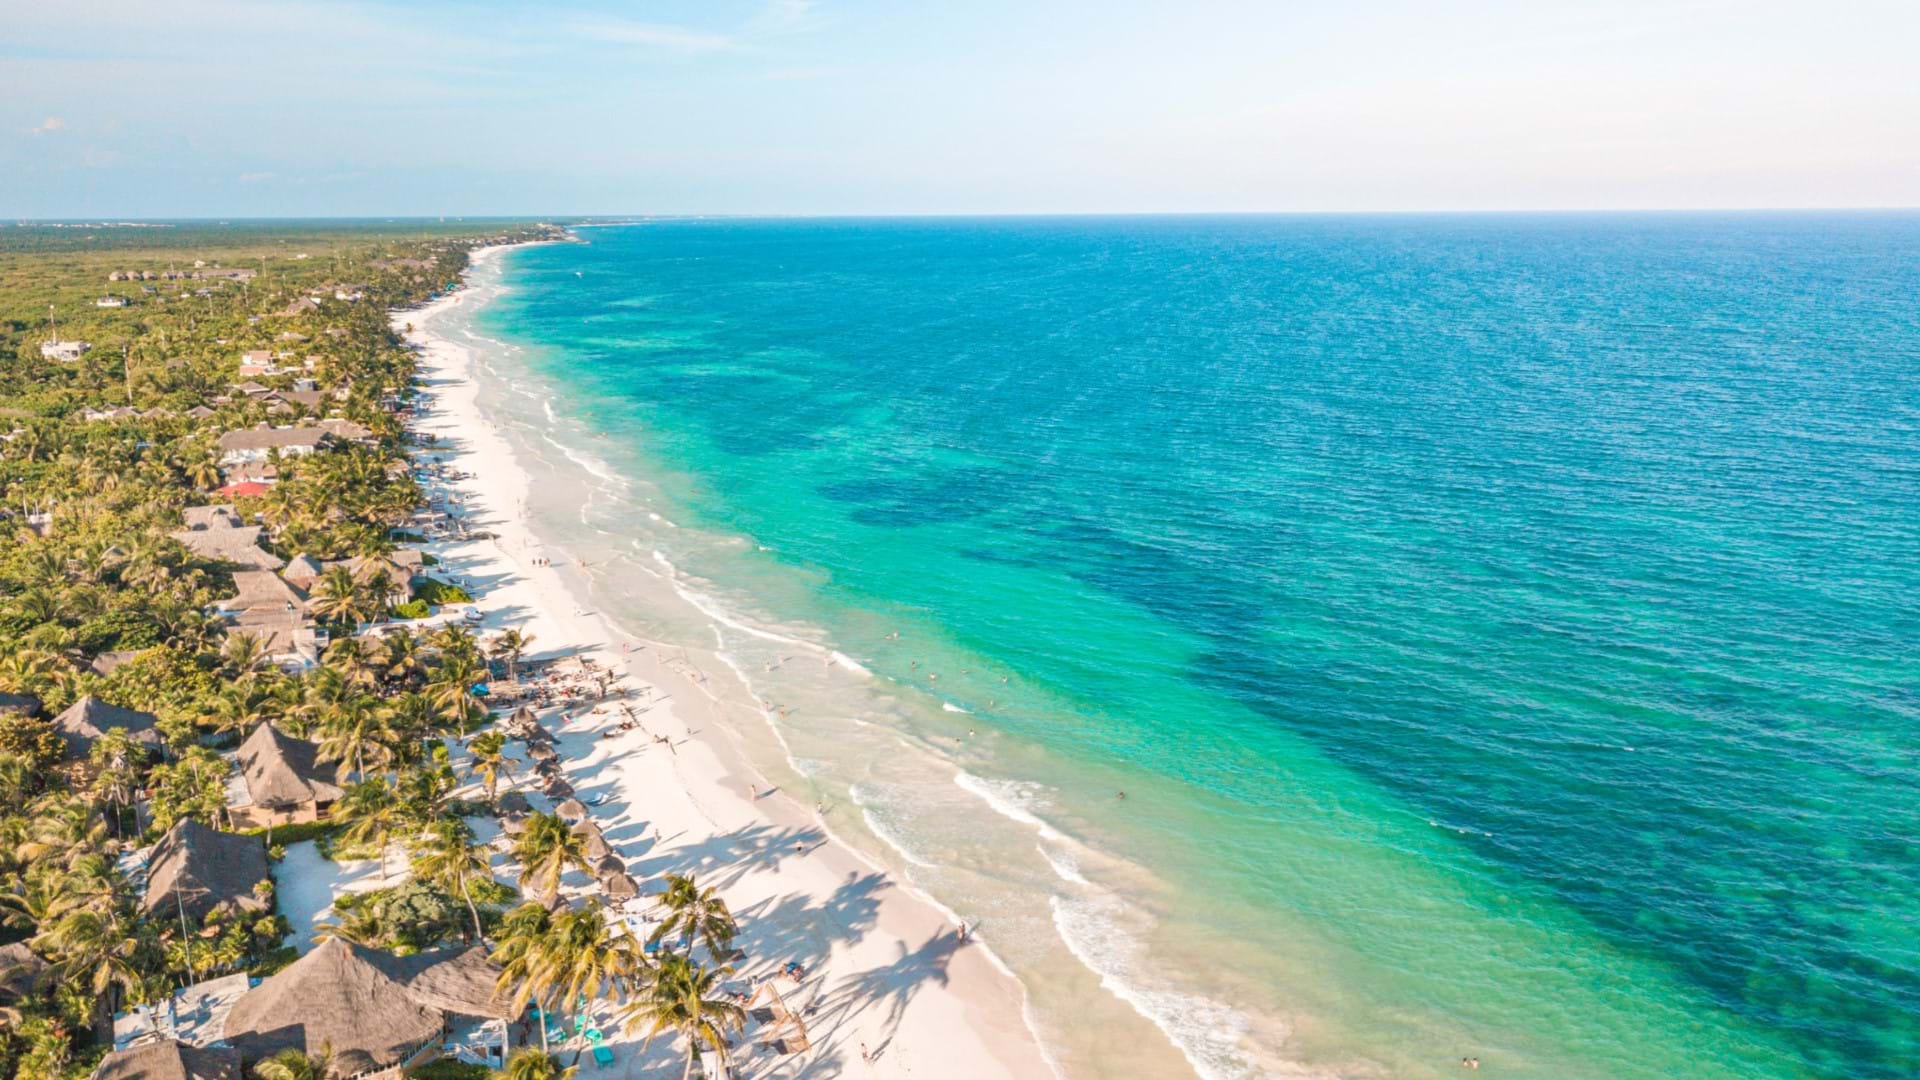 Meksiko putovanje, Tulum slikan iz vazduha, obala na rivijeri maja sa tirkiznim morem i obalom posutom belim peskom i mnoštvom palmi. Savršen prizor.